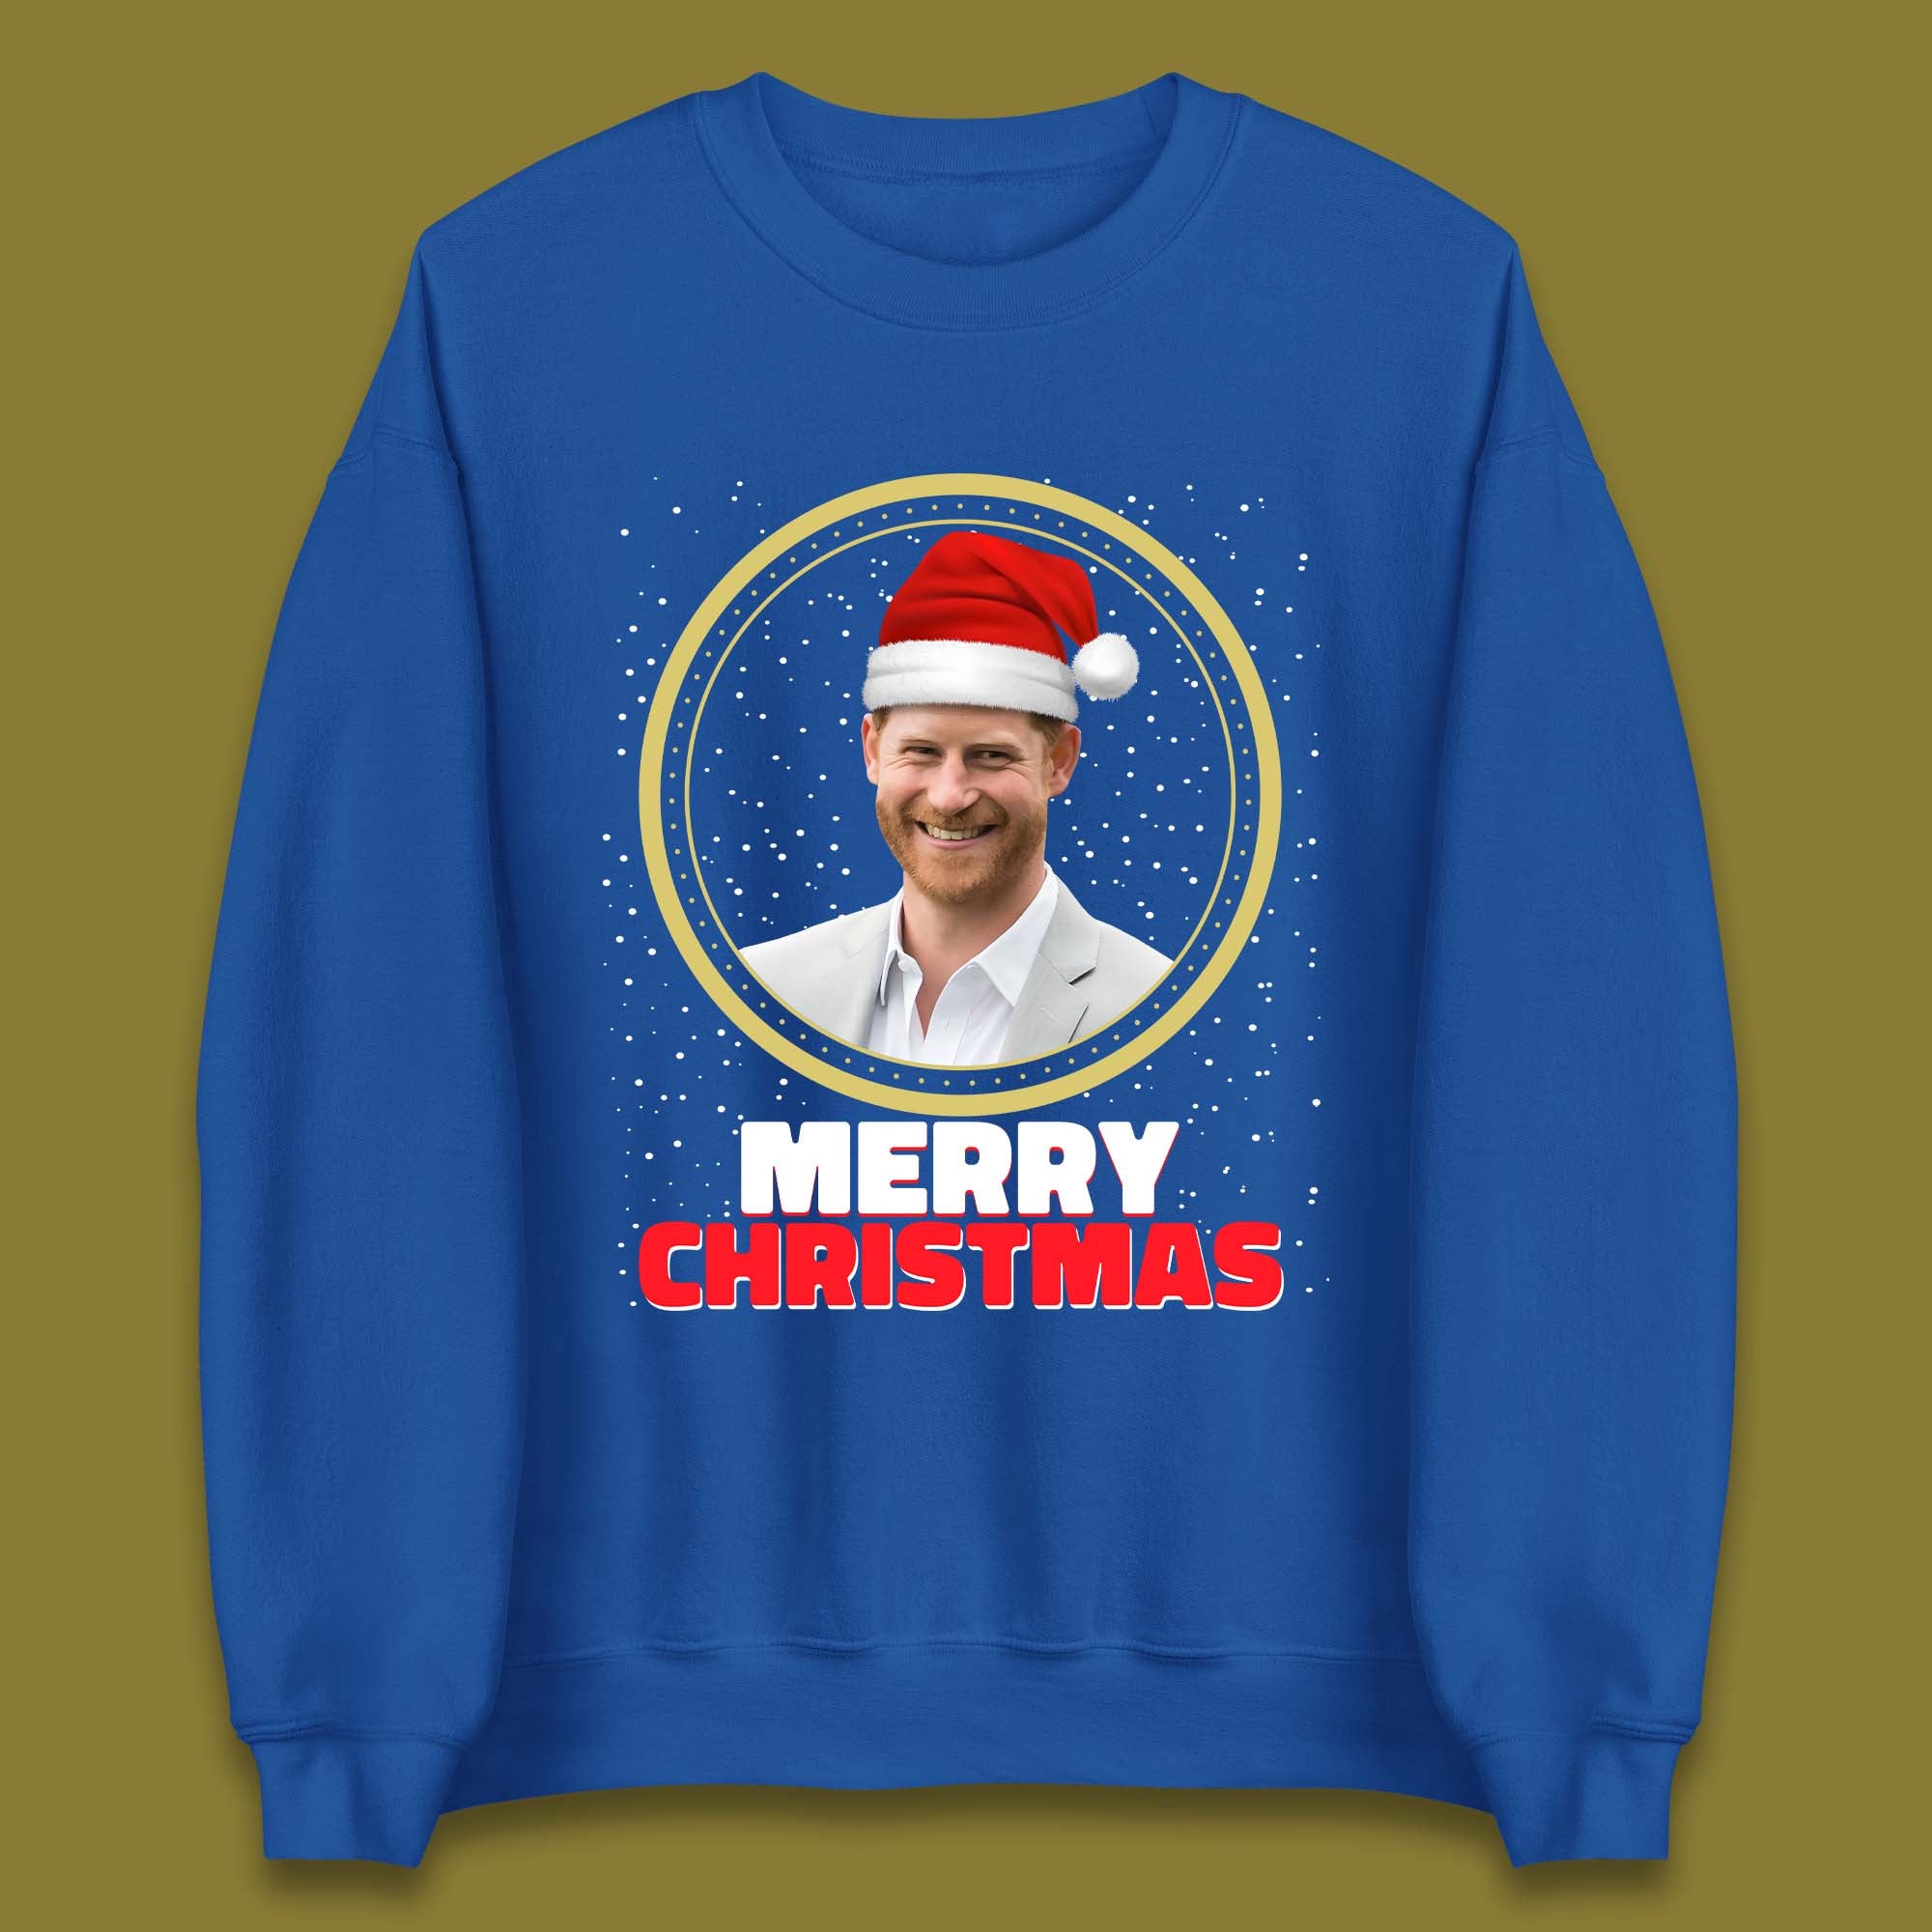 Prince Harry Christmas Unisex Sweatshirt